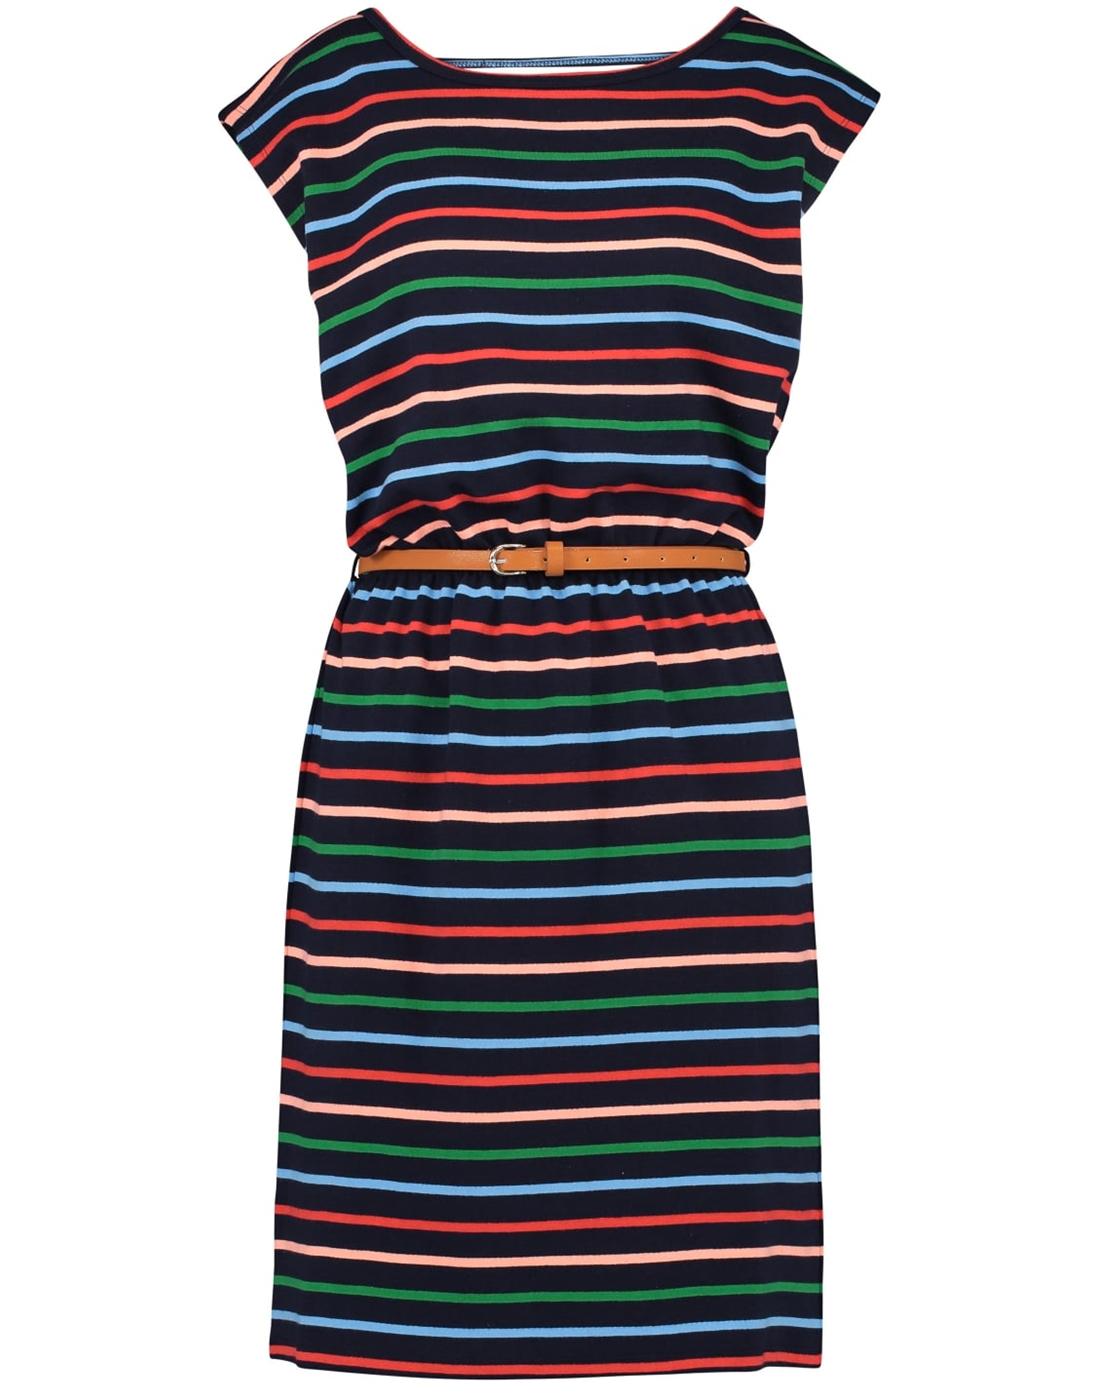 Hetty SUGARHILL BOUTIQUE Retro Striped 70s Dress